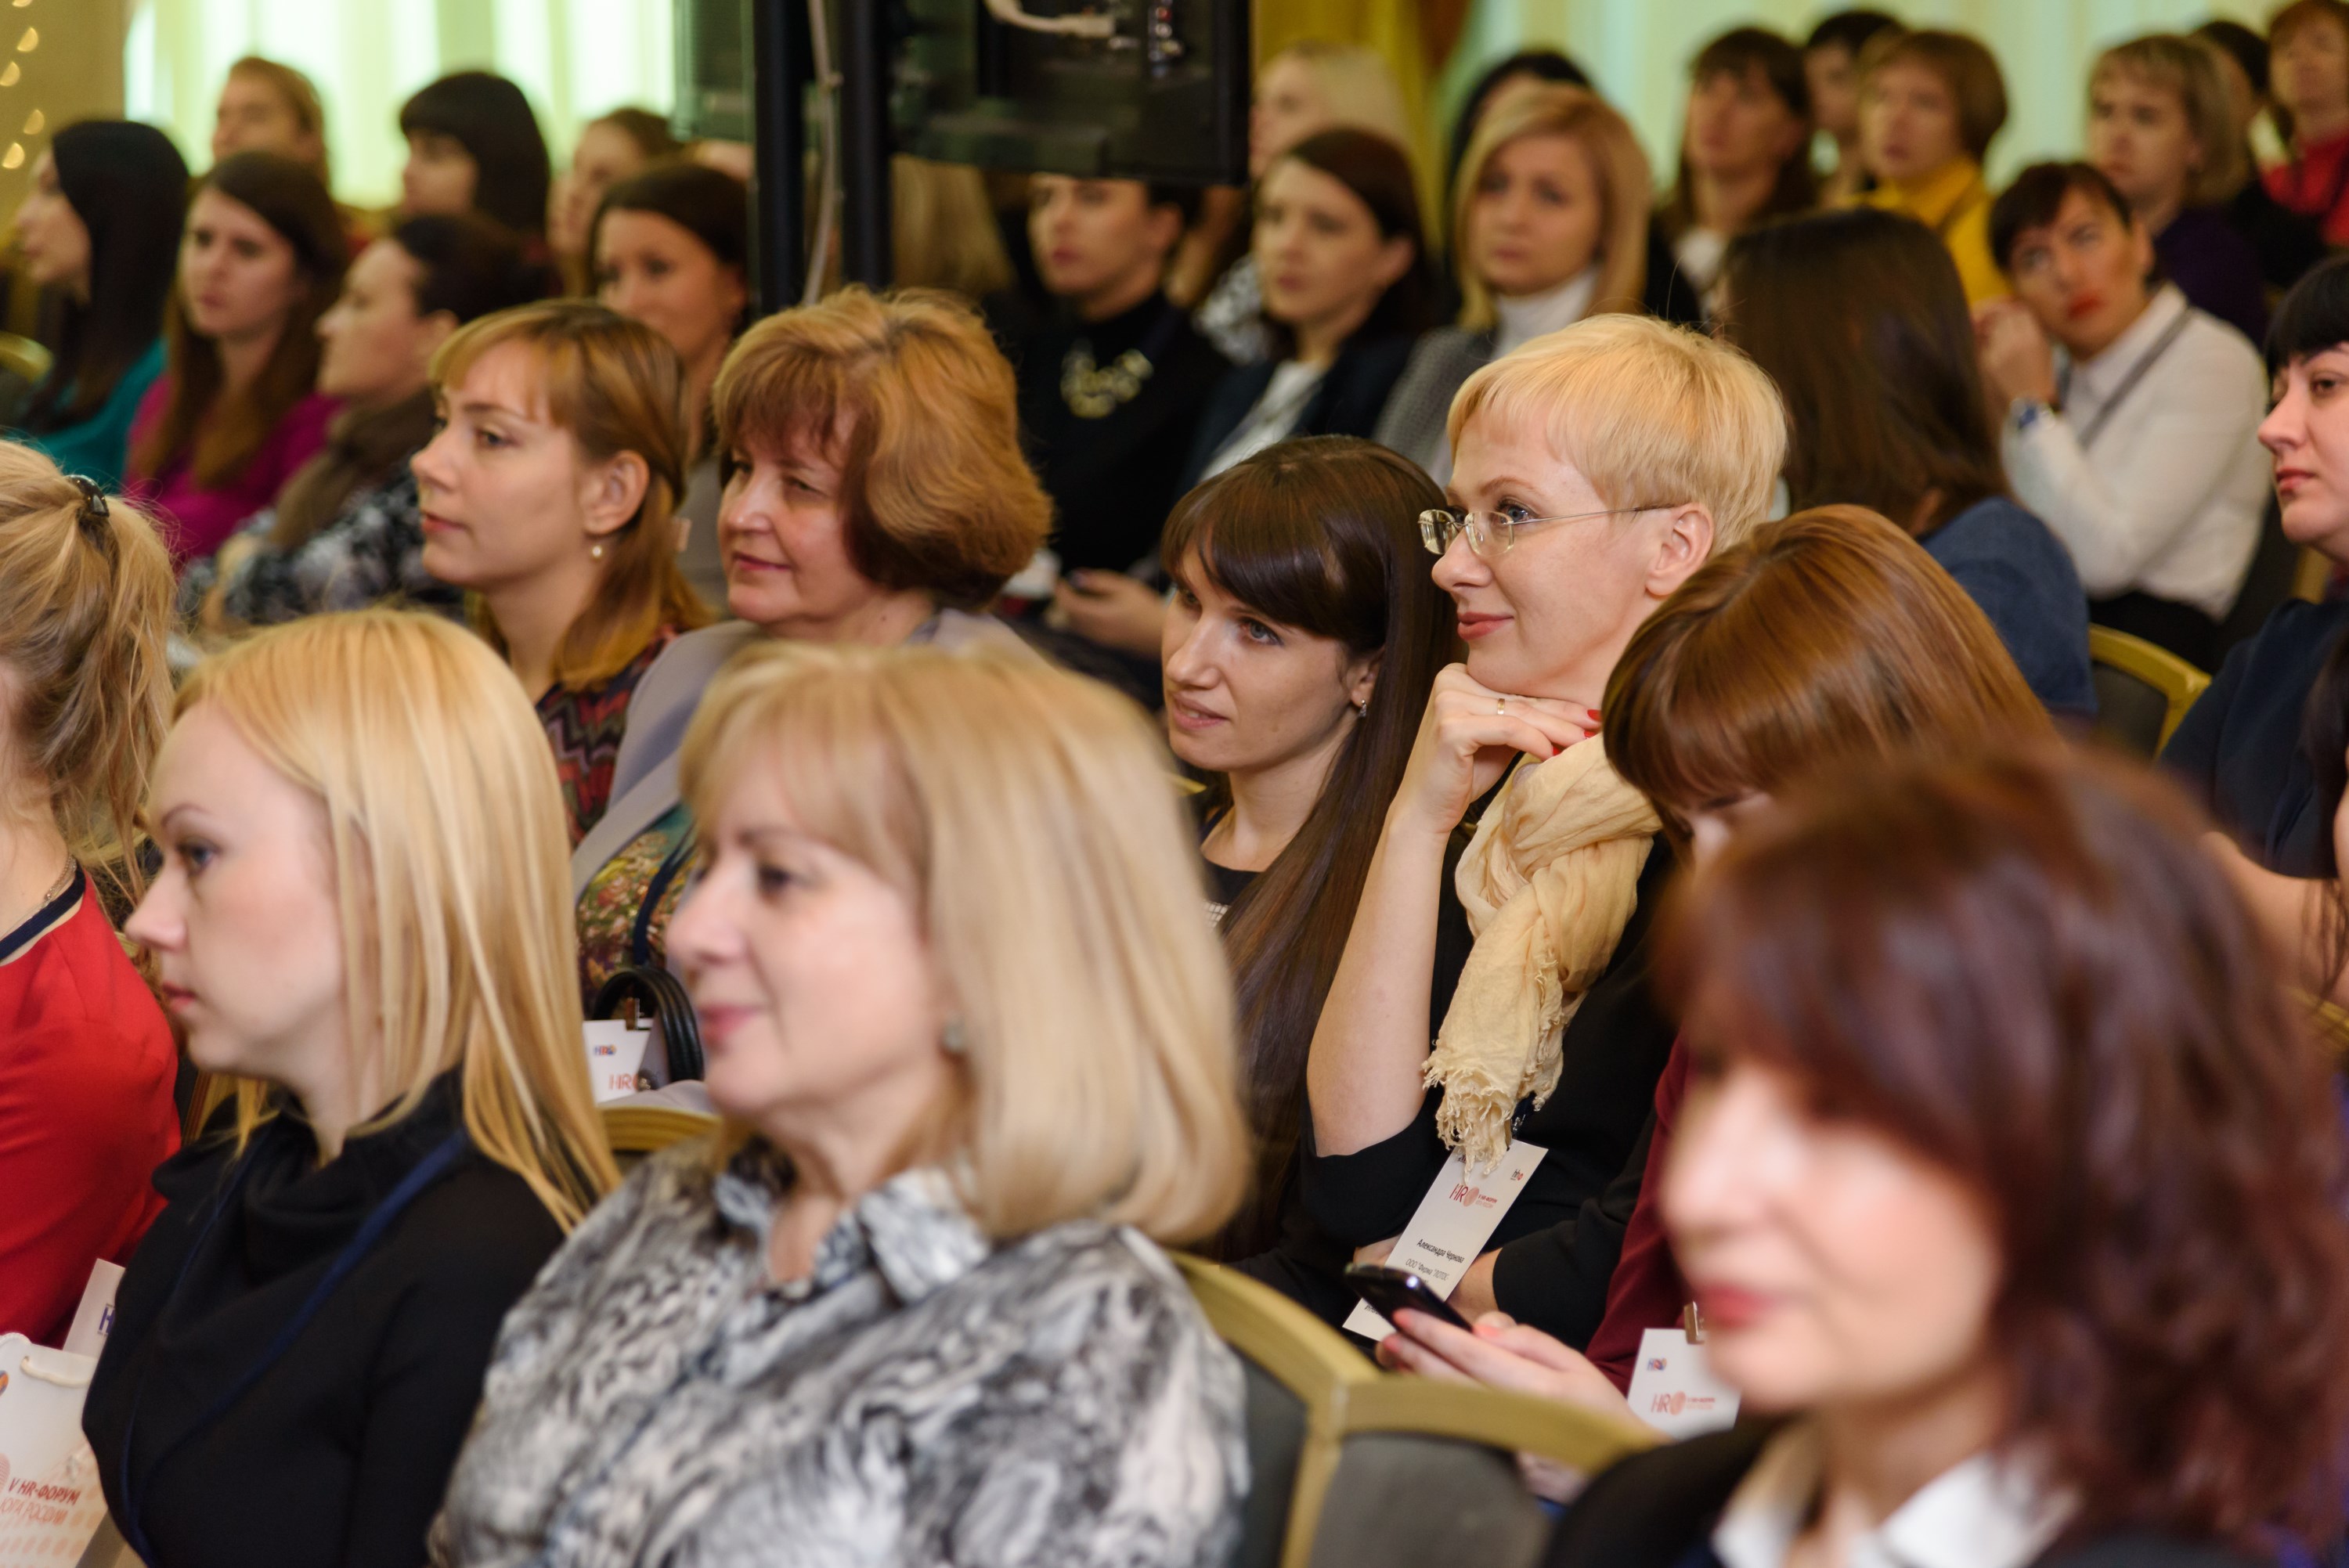 Пятый HR-Форум Юга России собрал более 160 работодателей региона